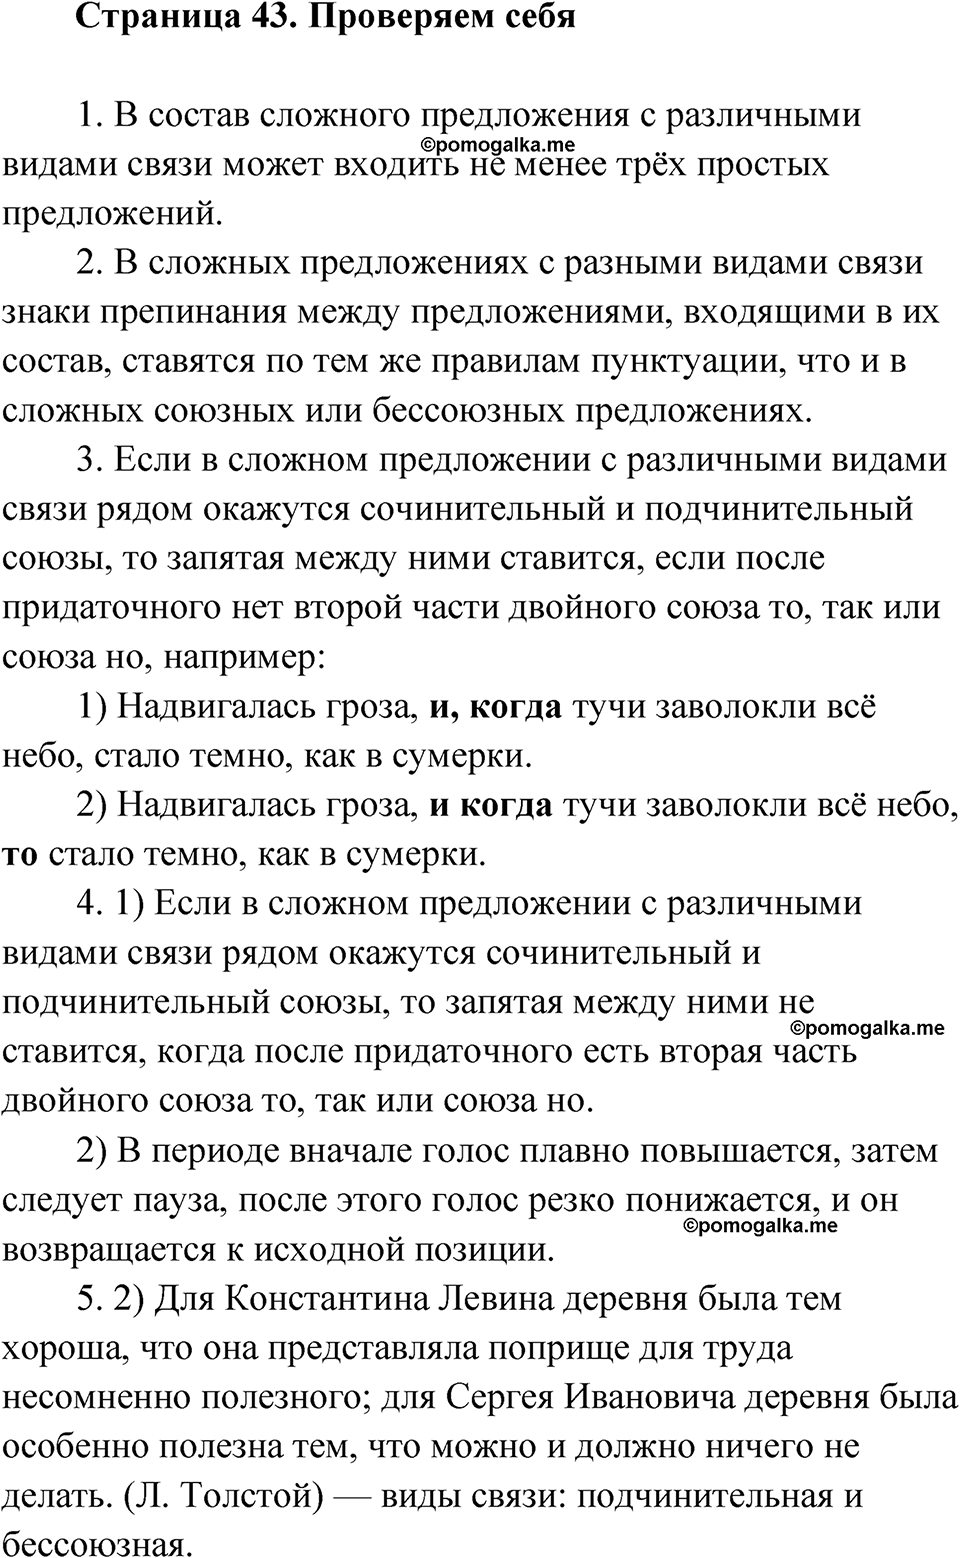 страница 43 Проверяем себя русский язык 9 класс Быстрова 2 часть 2022 год